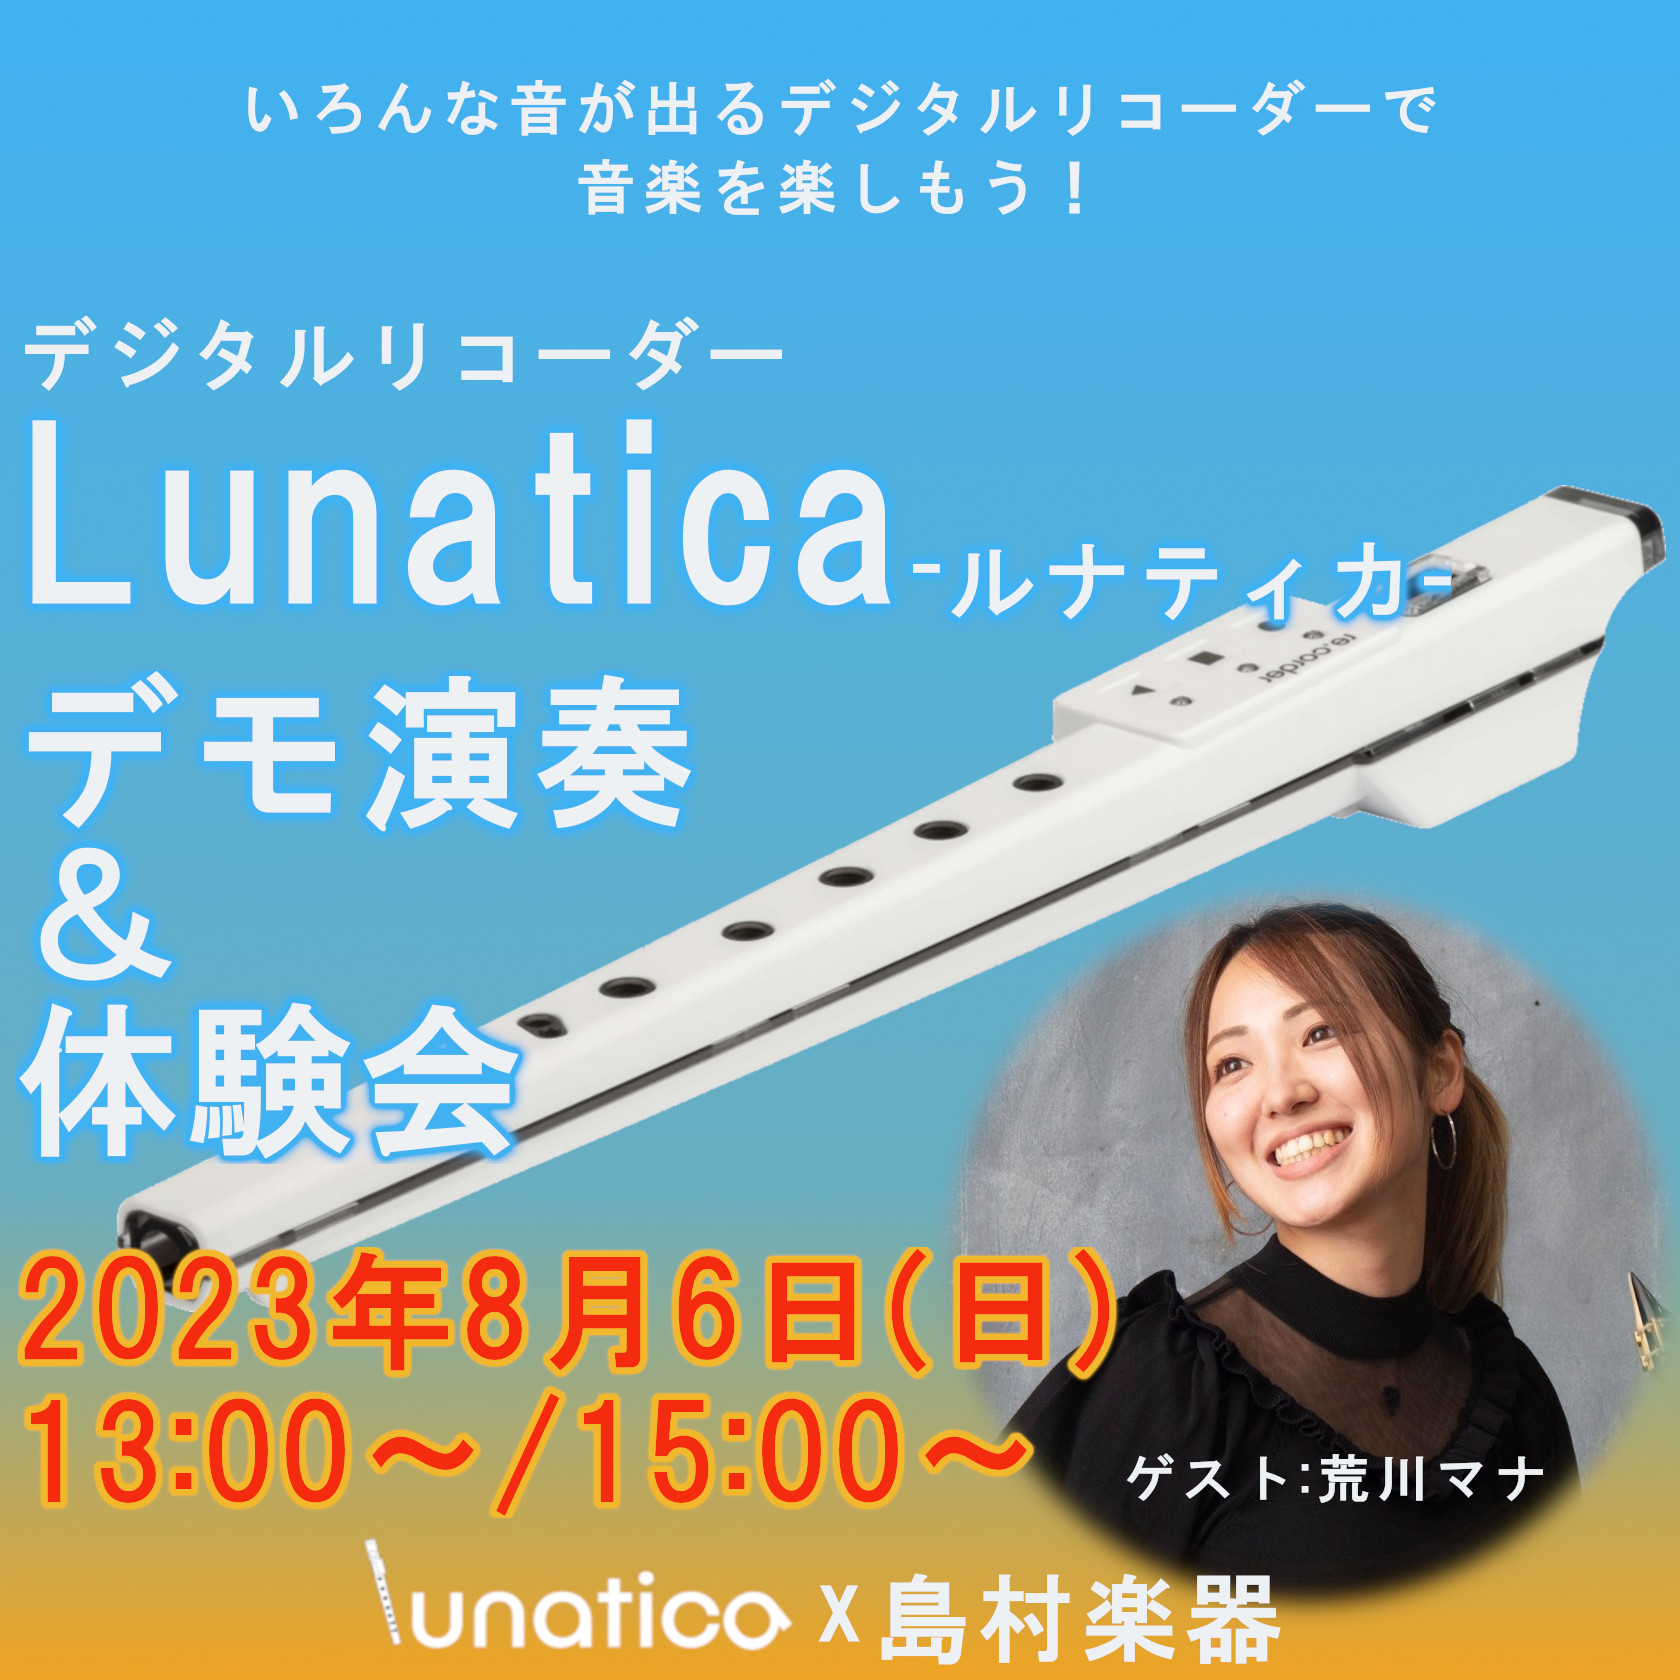 CONTENTSイベント概要Lunatica－ルナティカ-とは？商品詳細イベント担当イベント概要 昨年日本に上陸した話題のデジタルリコーダーLunatica-ルナティカ-実際にどんな楽器なのか、どんな事が出来るのかをゲストによるデモ演奏と合わせて体験できるイベントを開催致します！観覧・ご参加は無料と […]